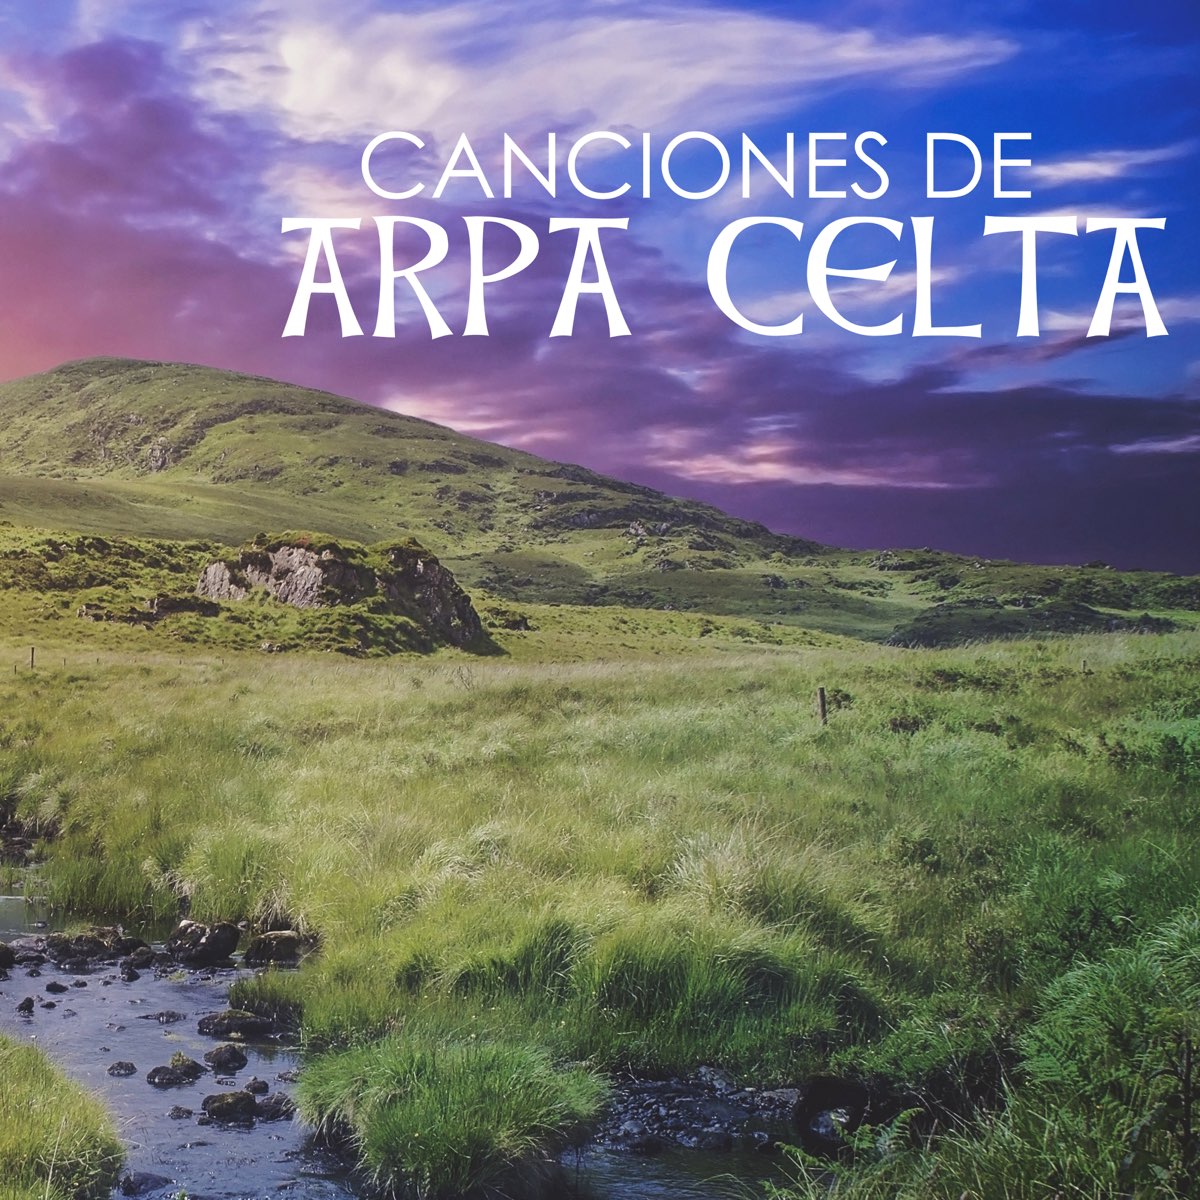 Canciones de Arpa Celta - Música Relajante Tradicional Irlandesa, Flauta,  Guitarra y Violín Instrumental - Album by Musica Celta All Stars - Apple  Music